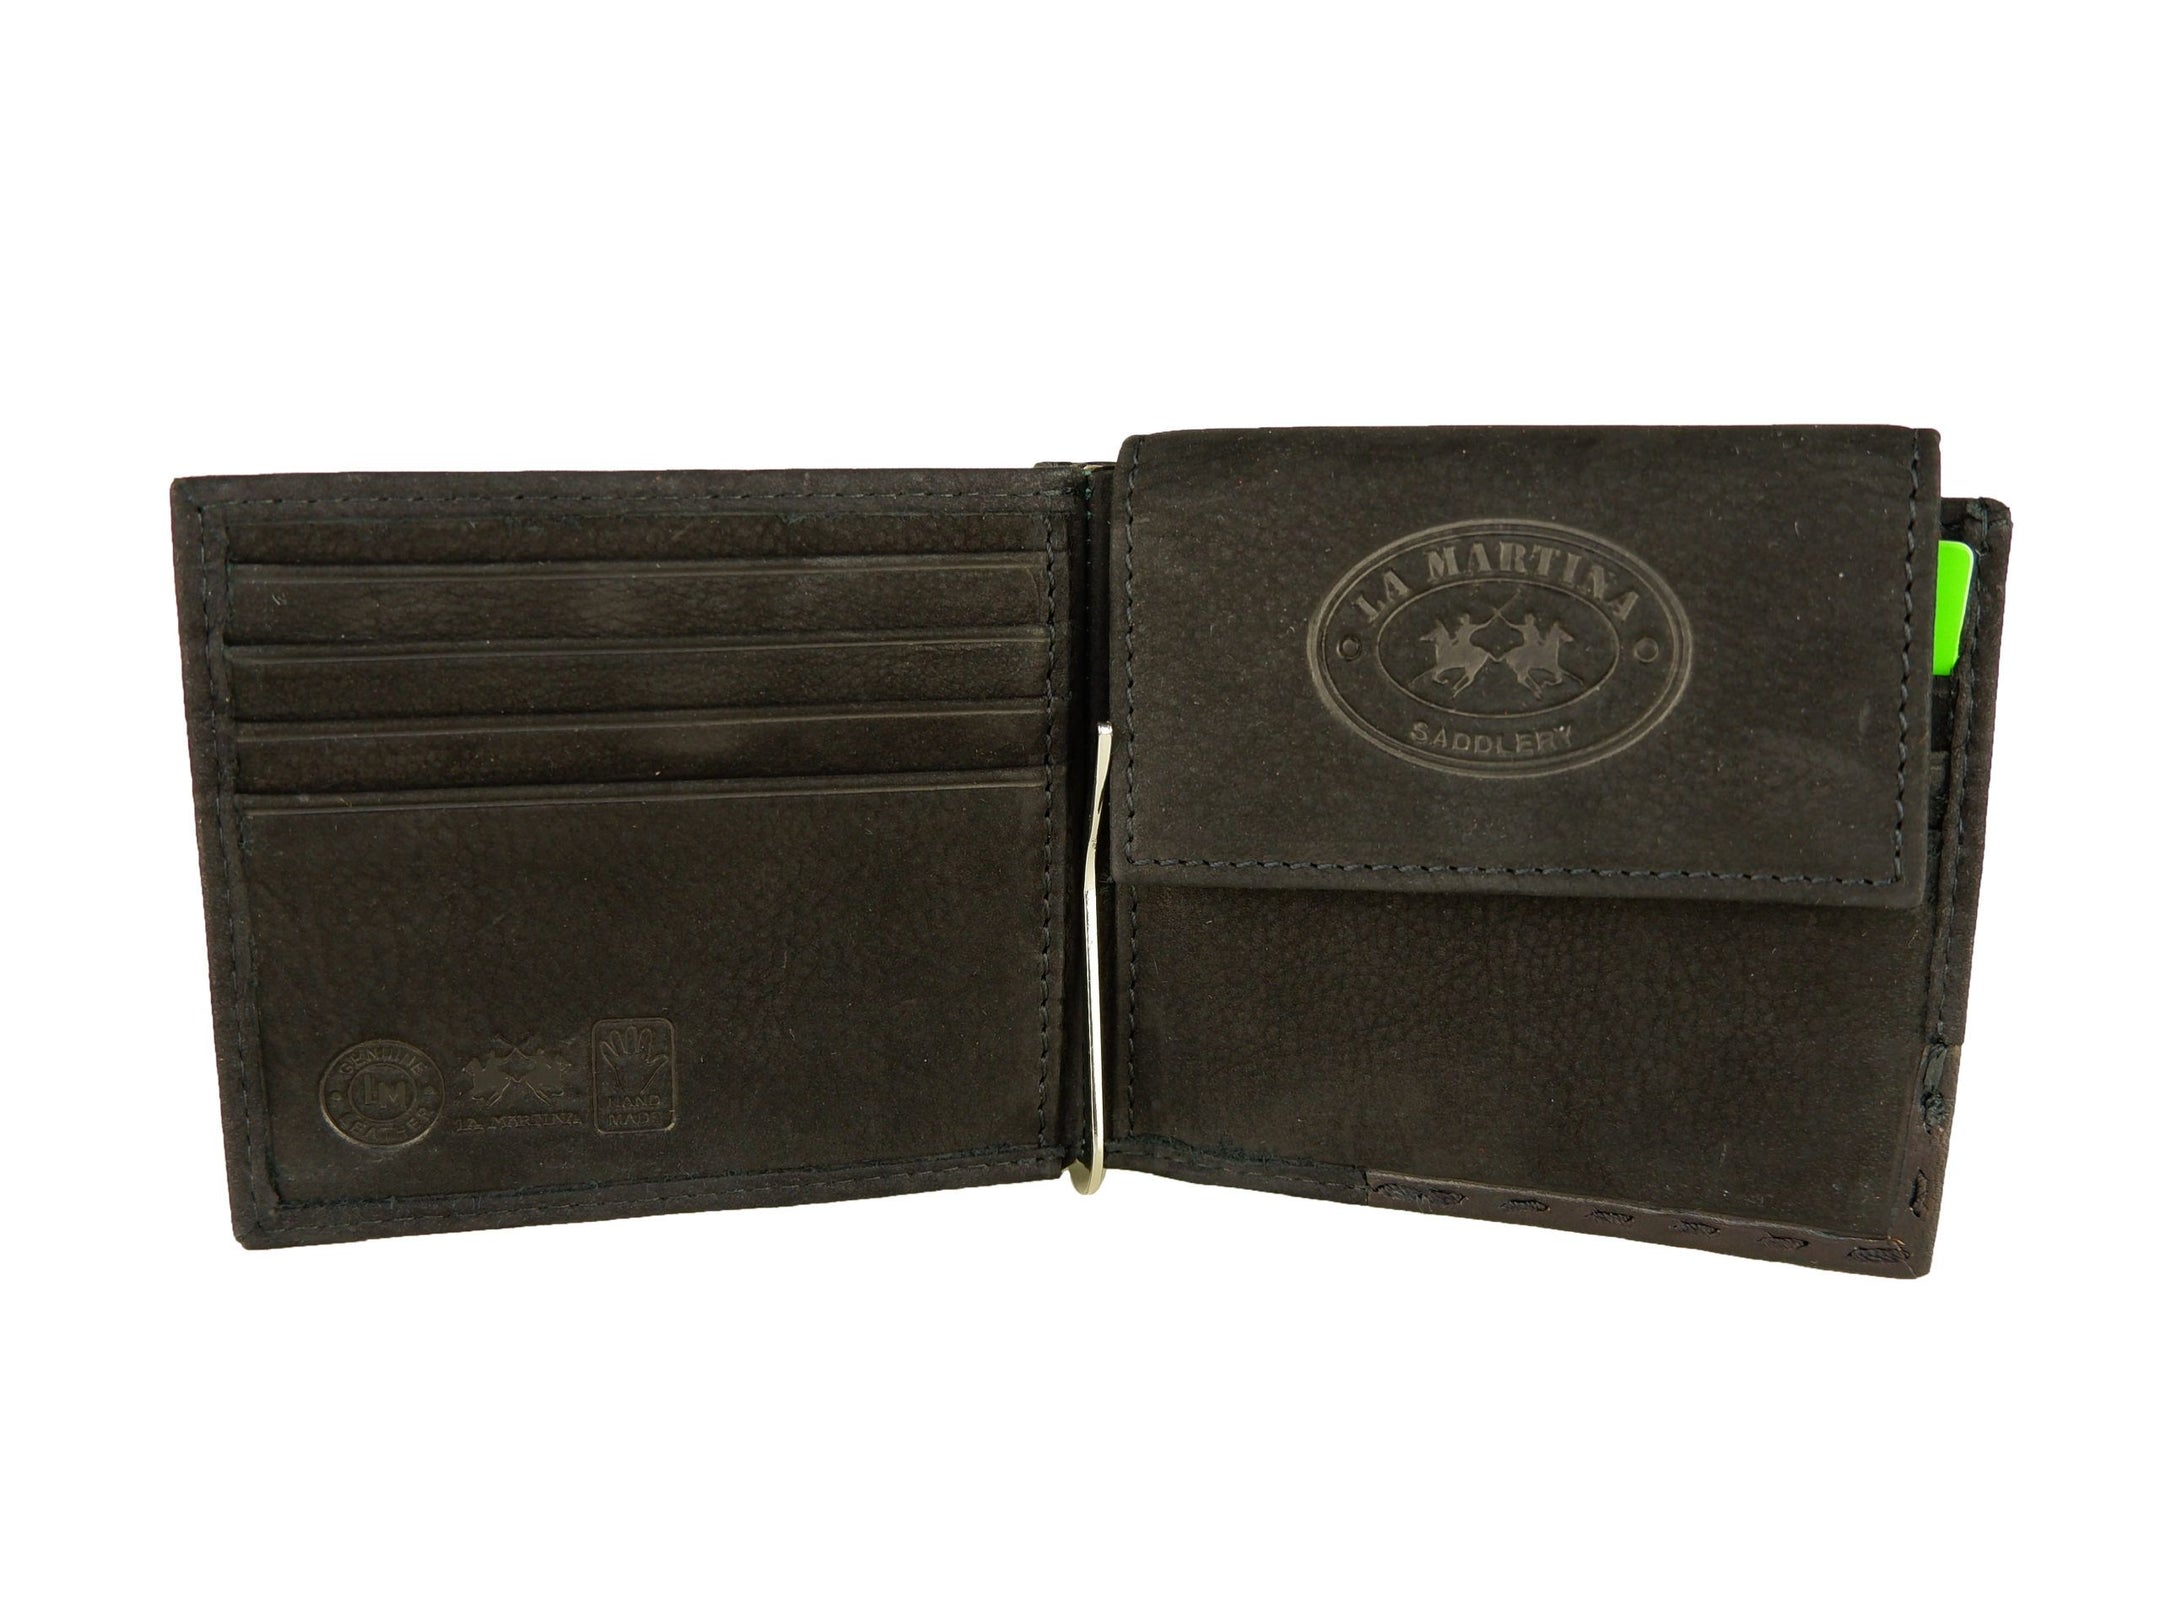 Elegant Black Leather Wallet for Men